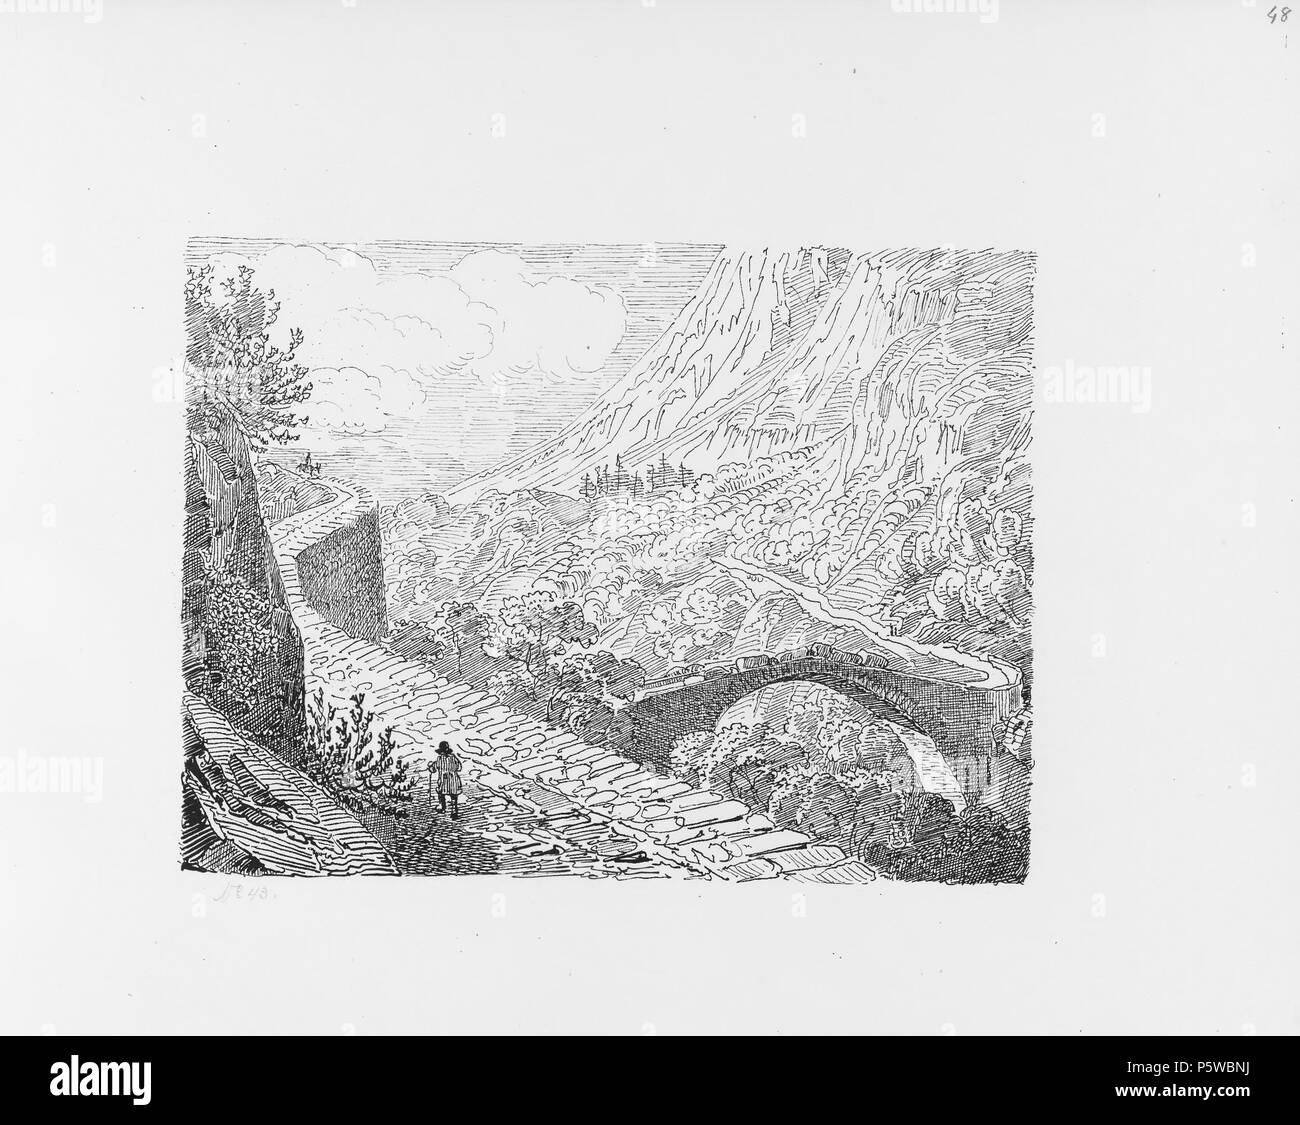 322 CH-NB-Voyage autour du Mont-Blanc dans les vallées d'Hérens de Zermatt et au Grimsel 1843-nbdig-19161-049 Stock Photo